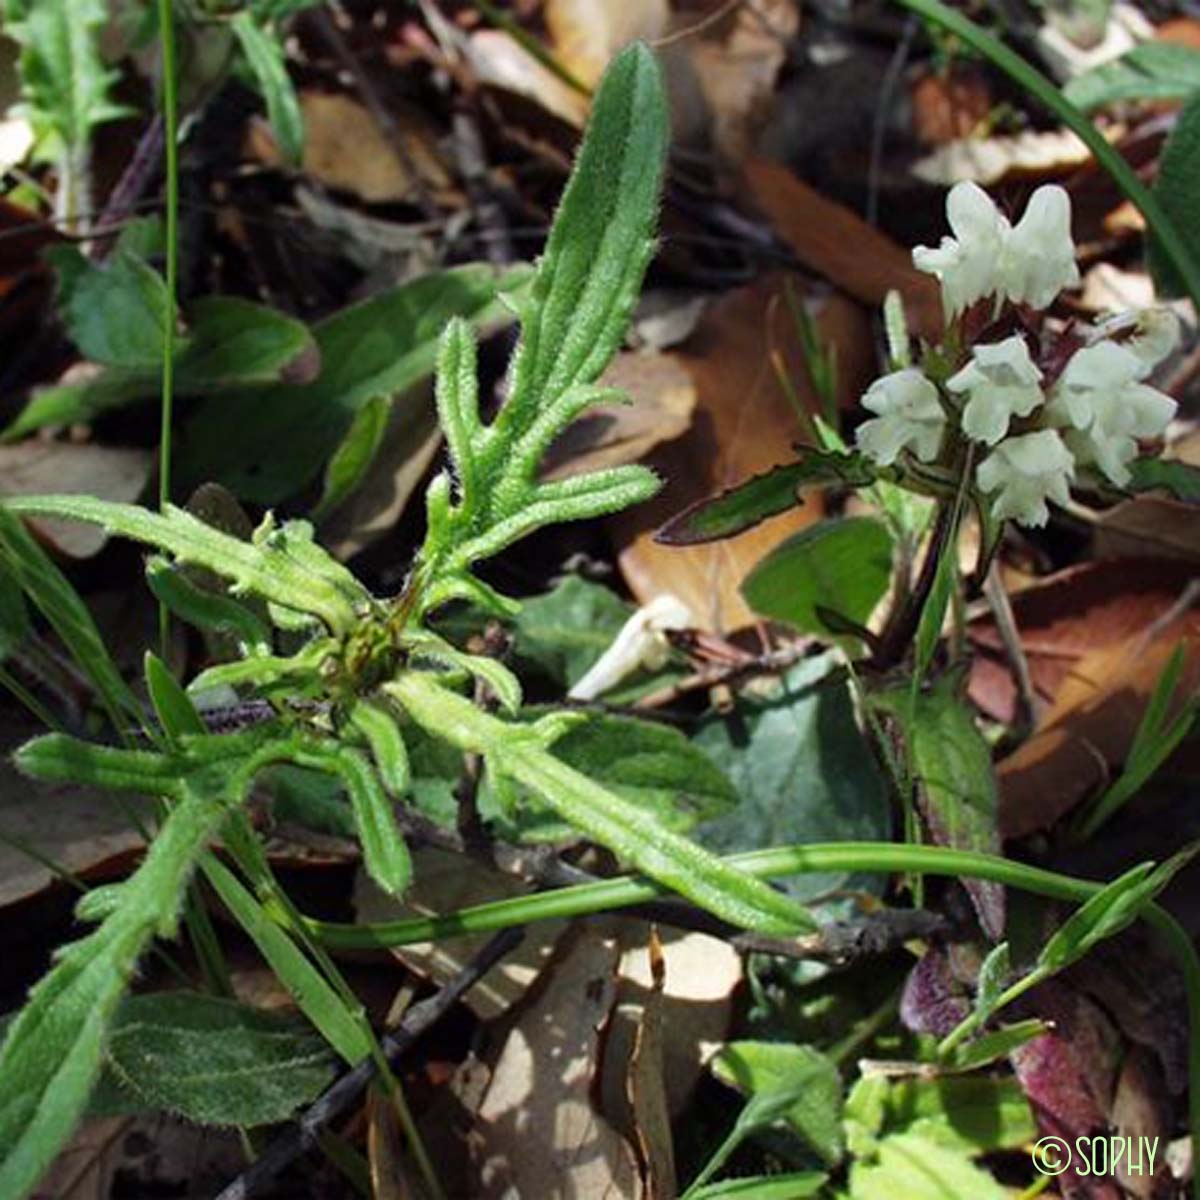 Brunelle blanche - Prunella laciniata